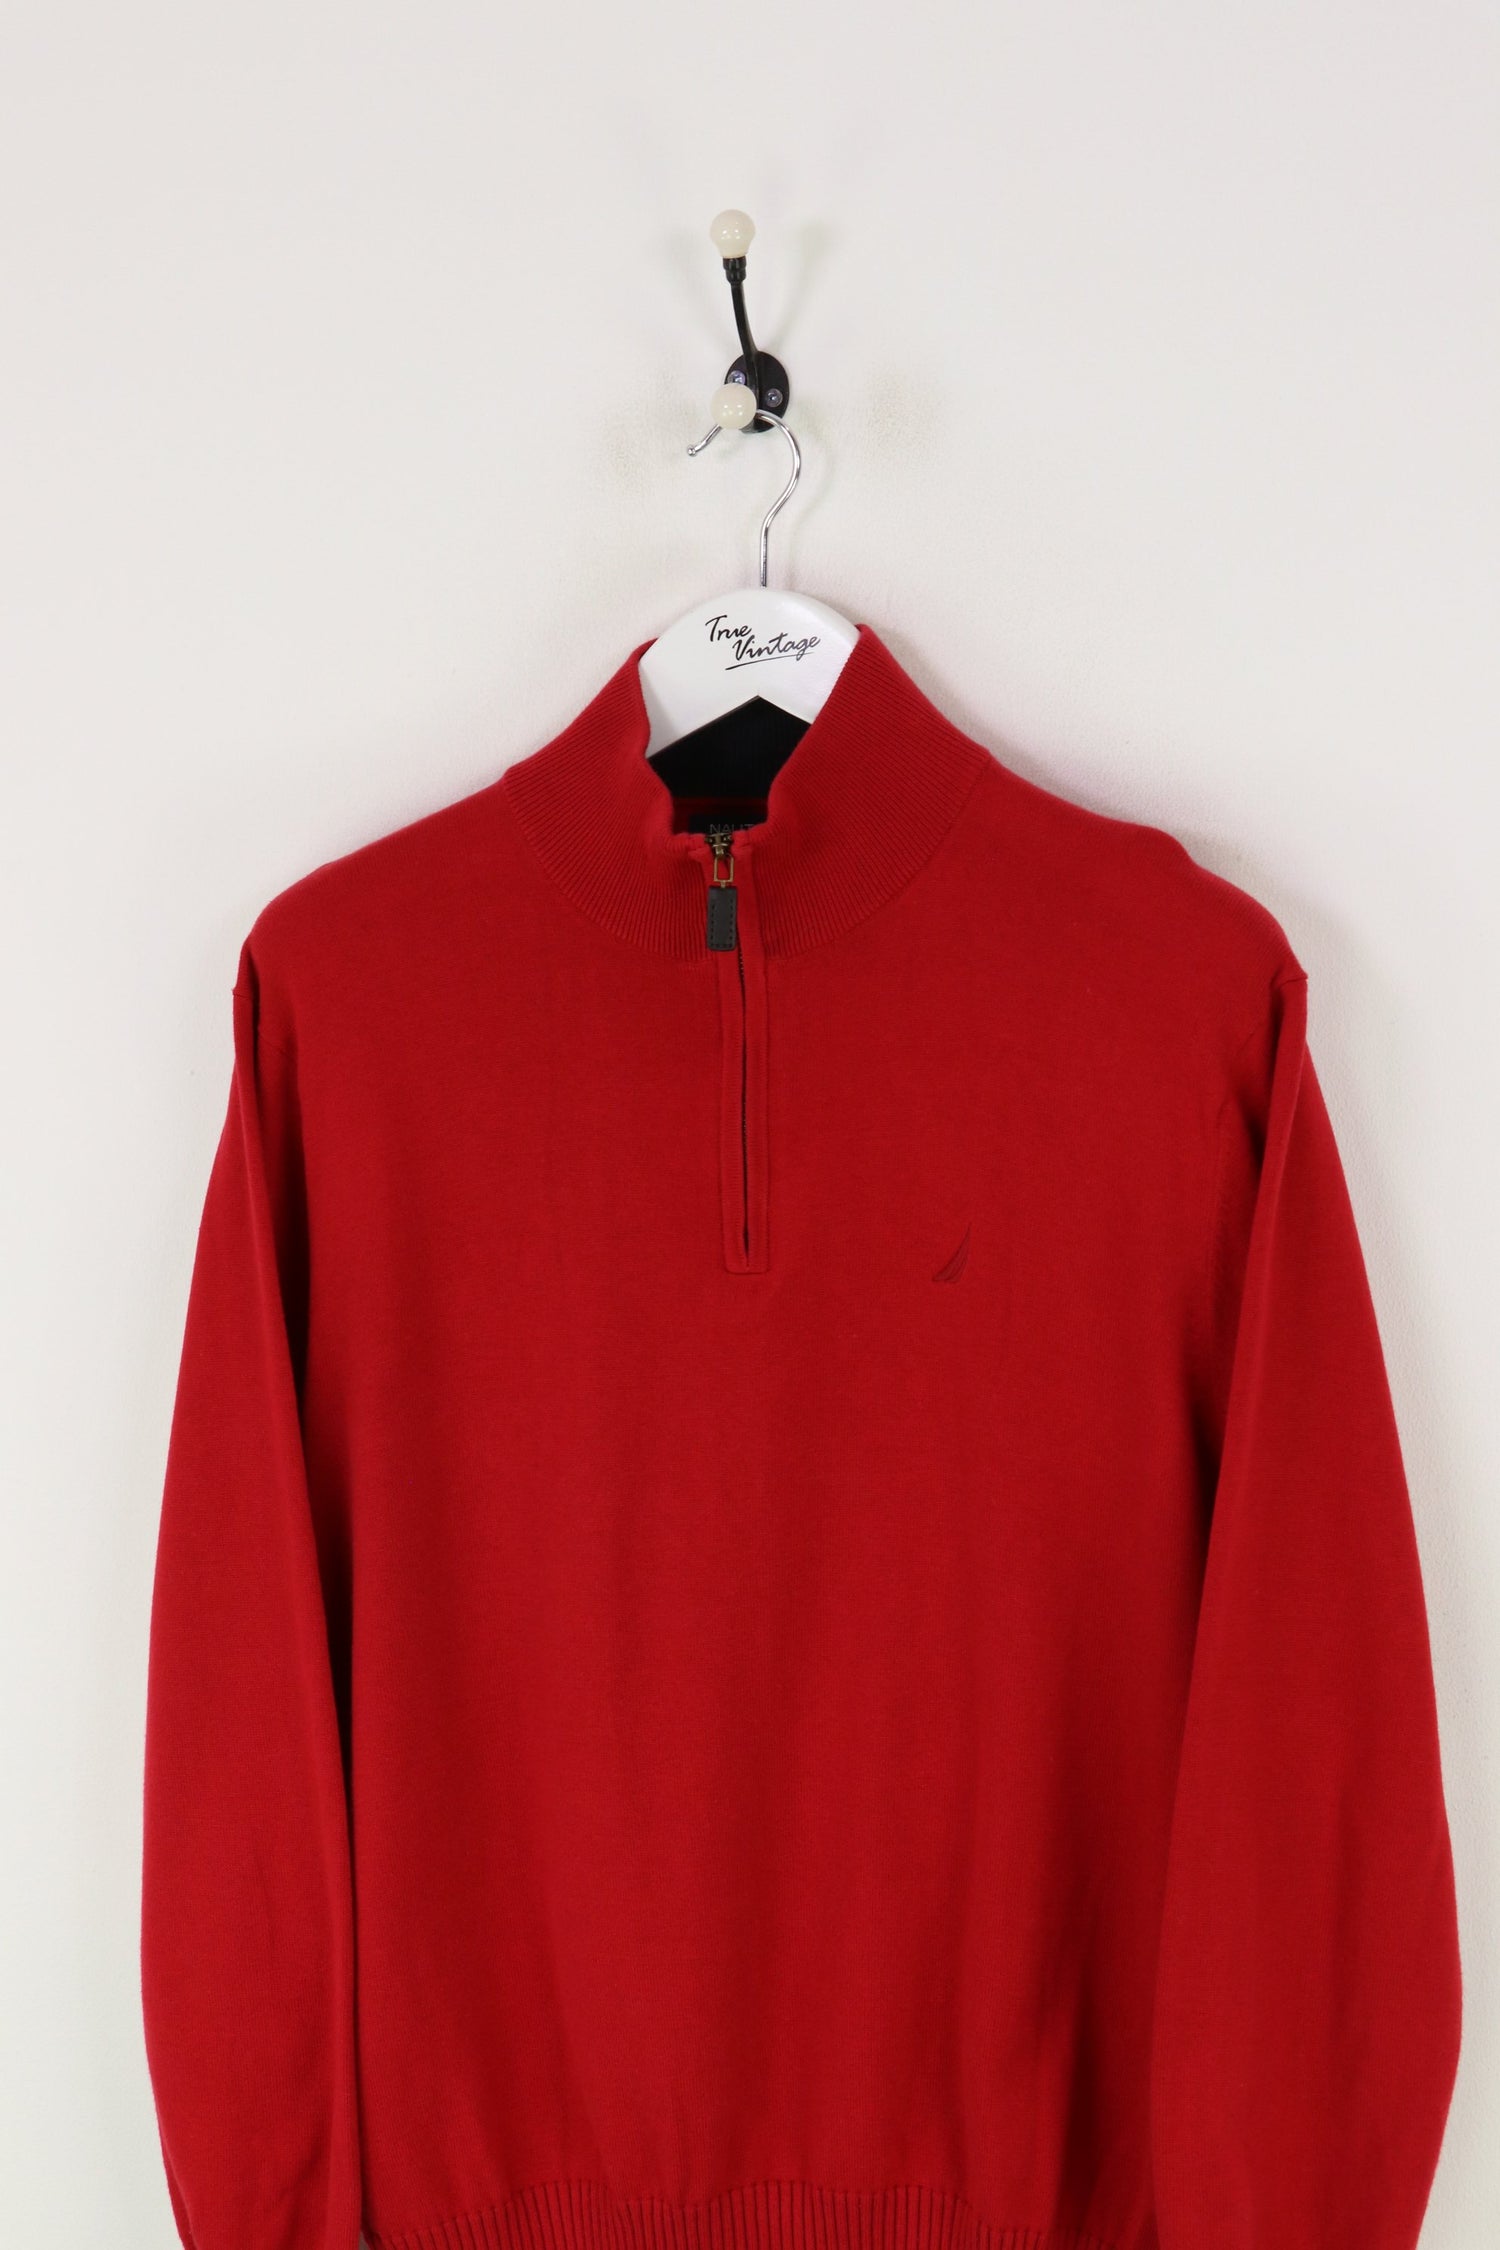 Nautica 1/4 Zip Knitted Sweatshirt Red Small